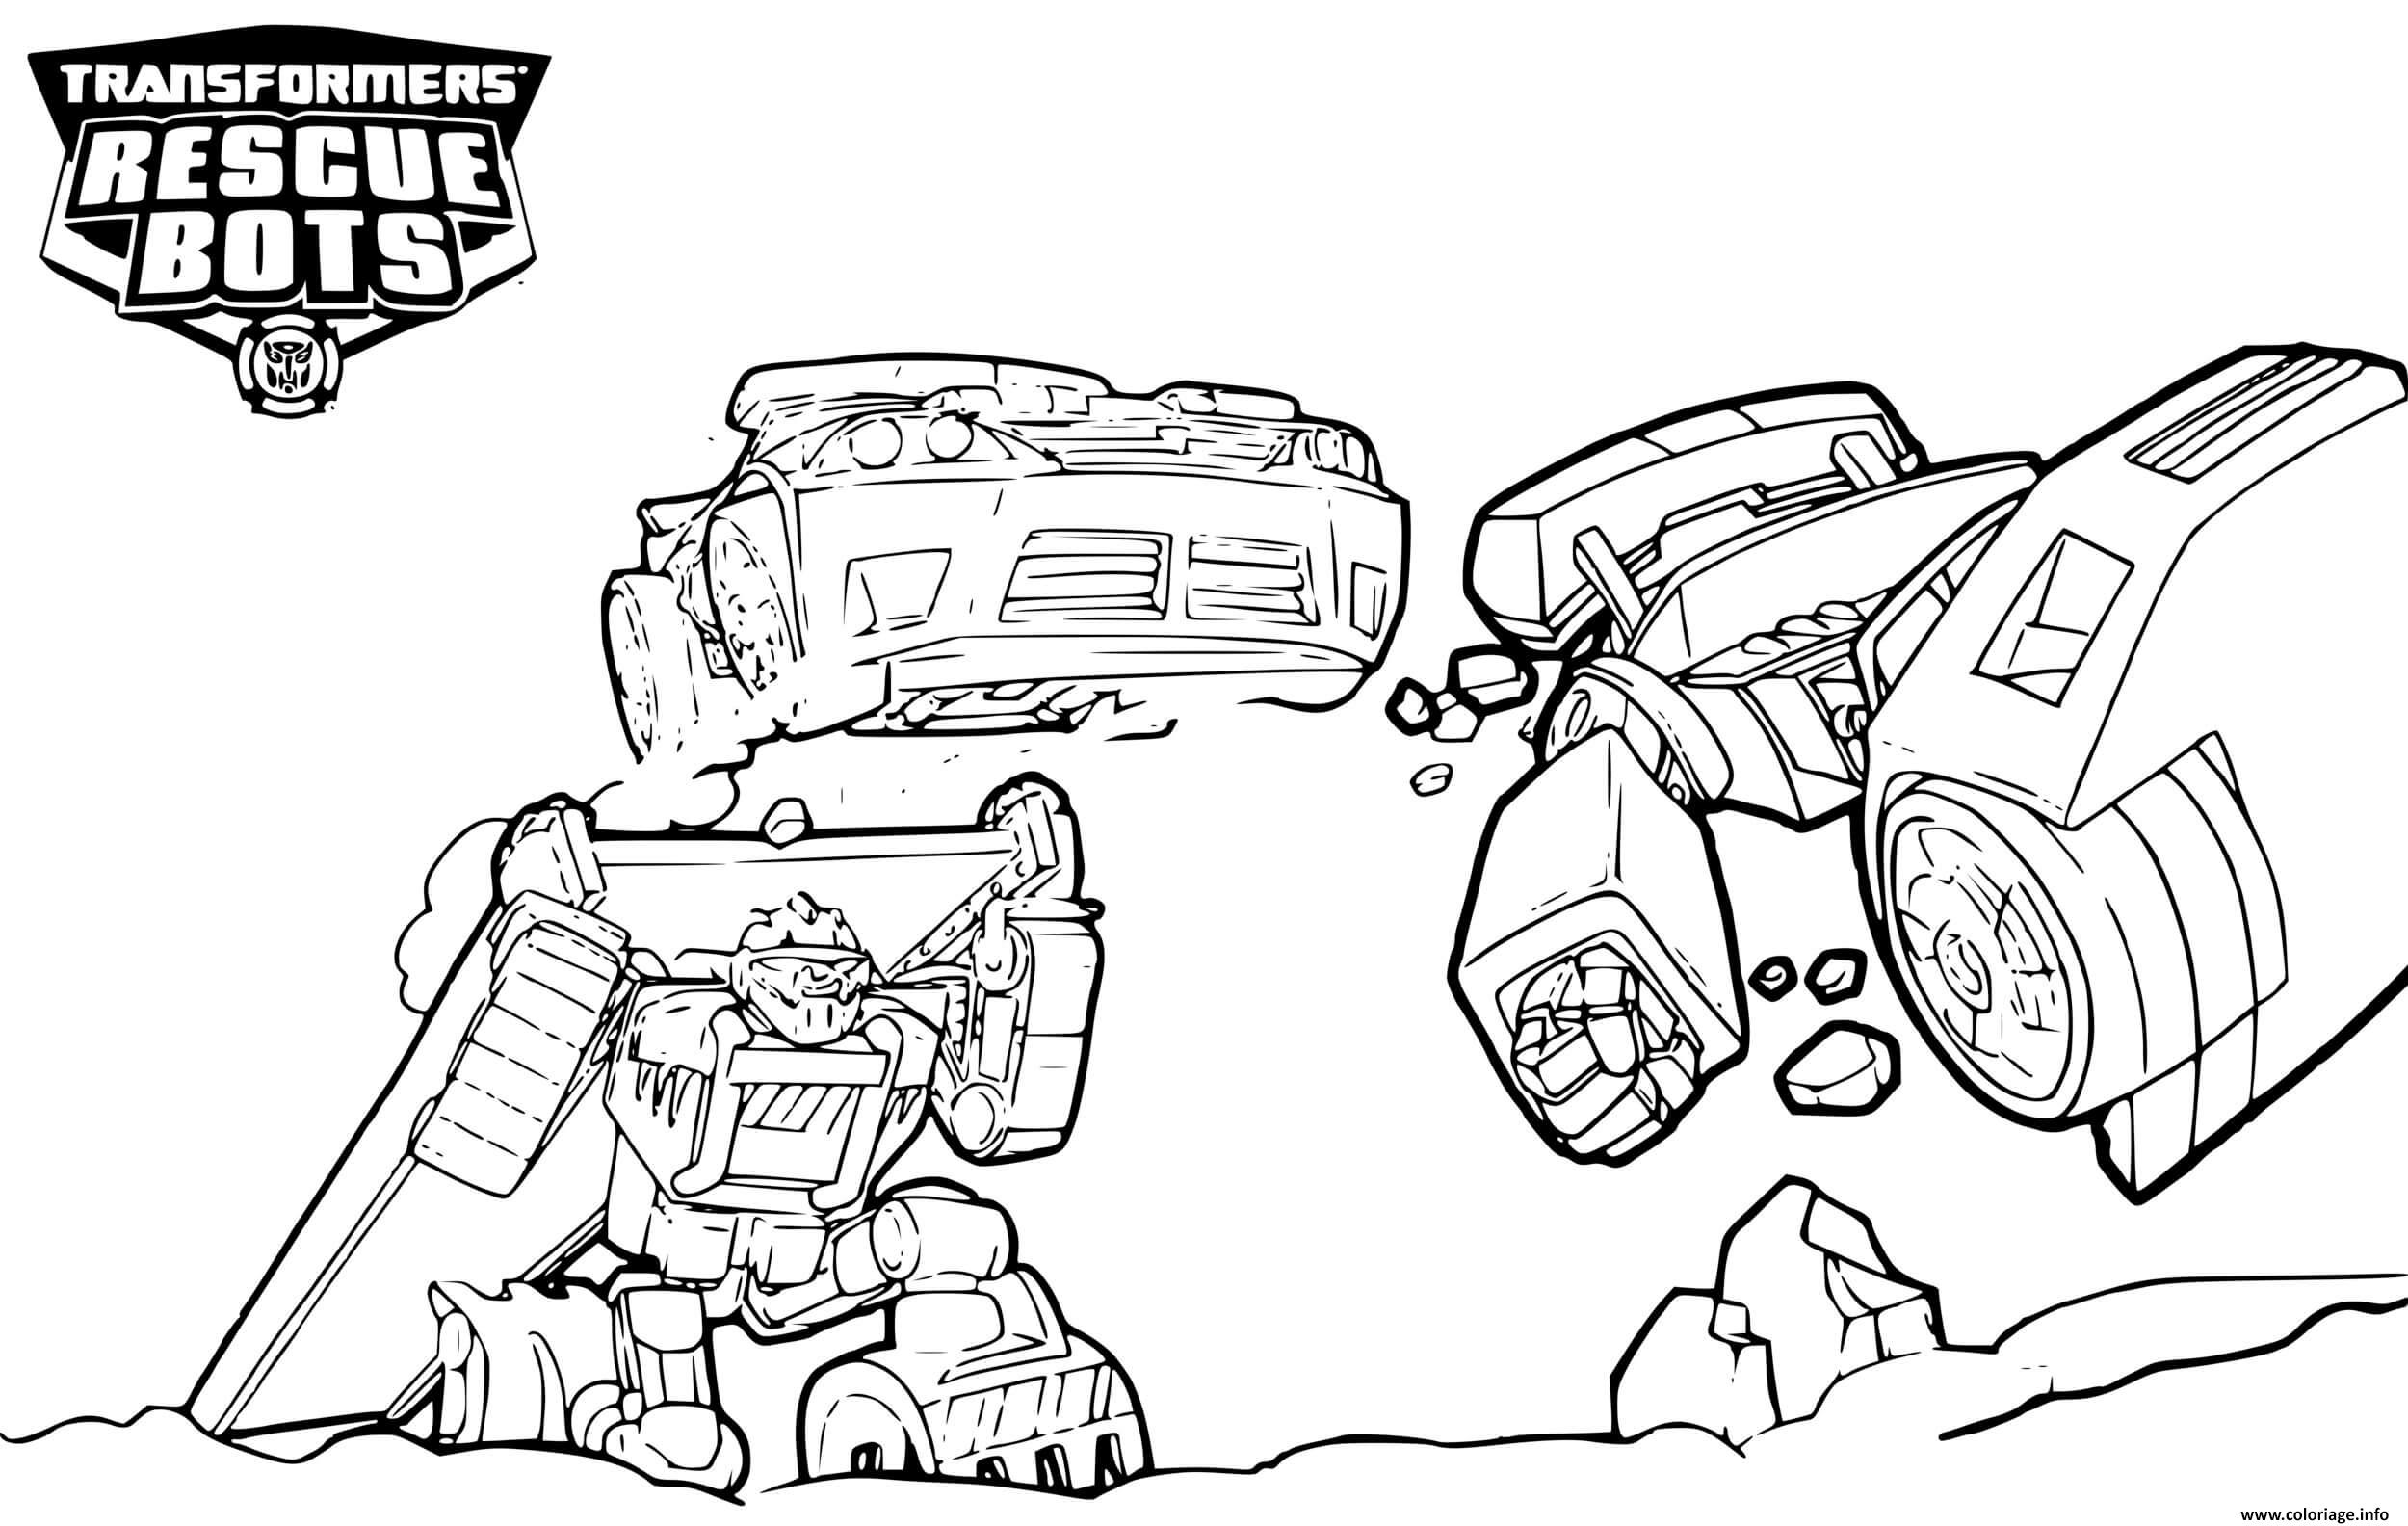 Dessin Transformers Rescue Bots Teamwork Coloriage Gratuit à Imprimer